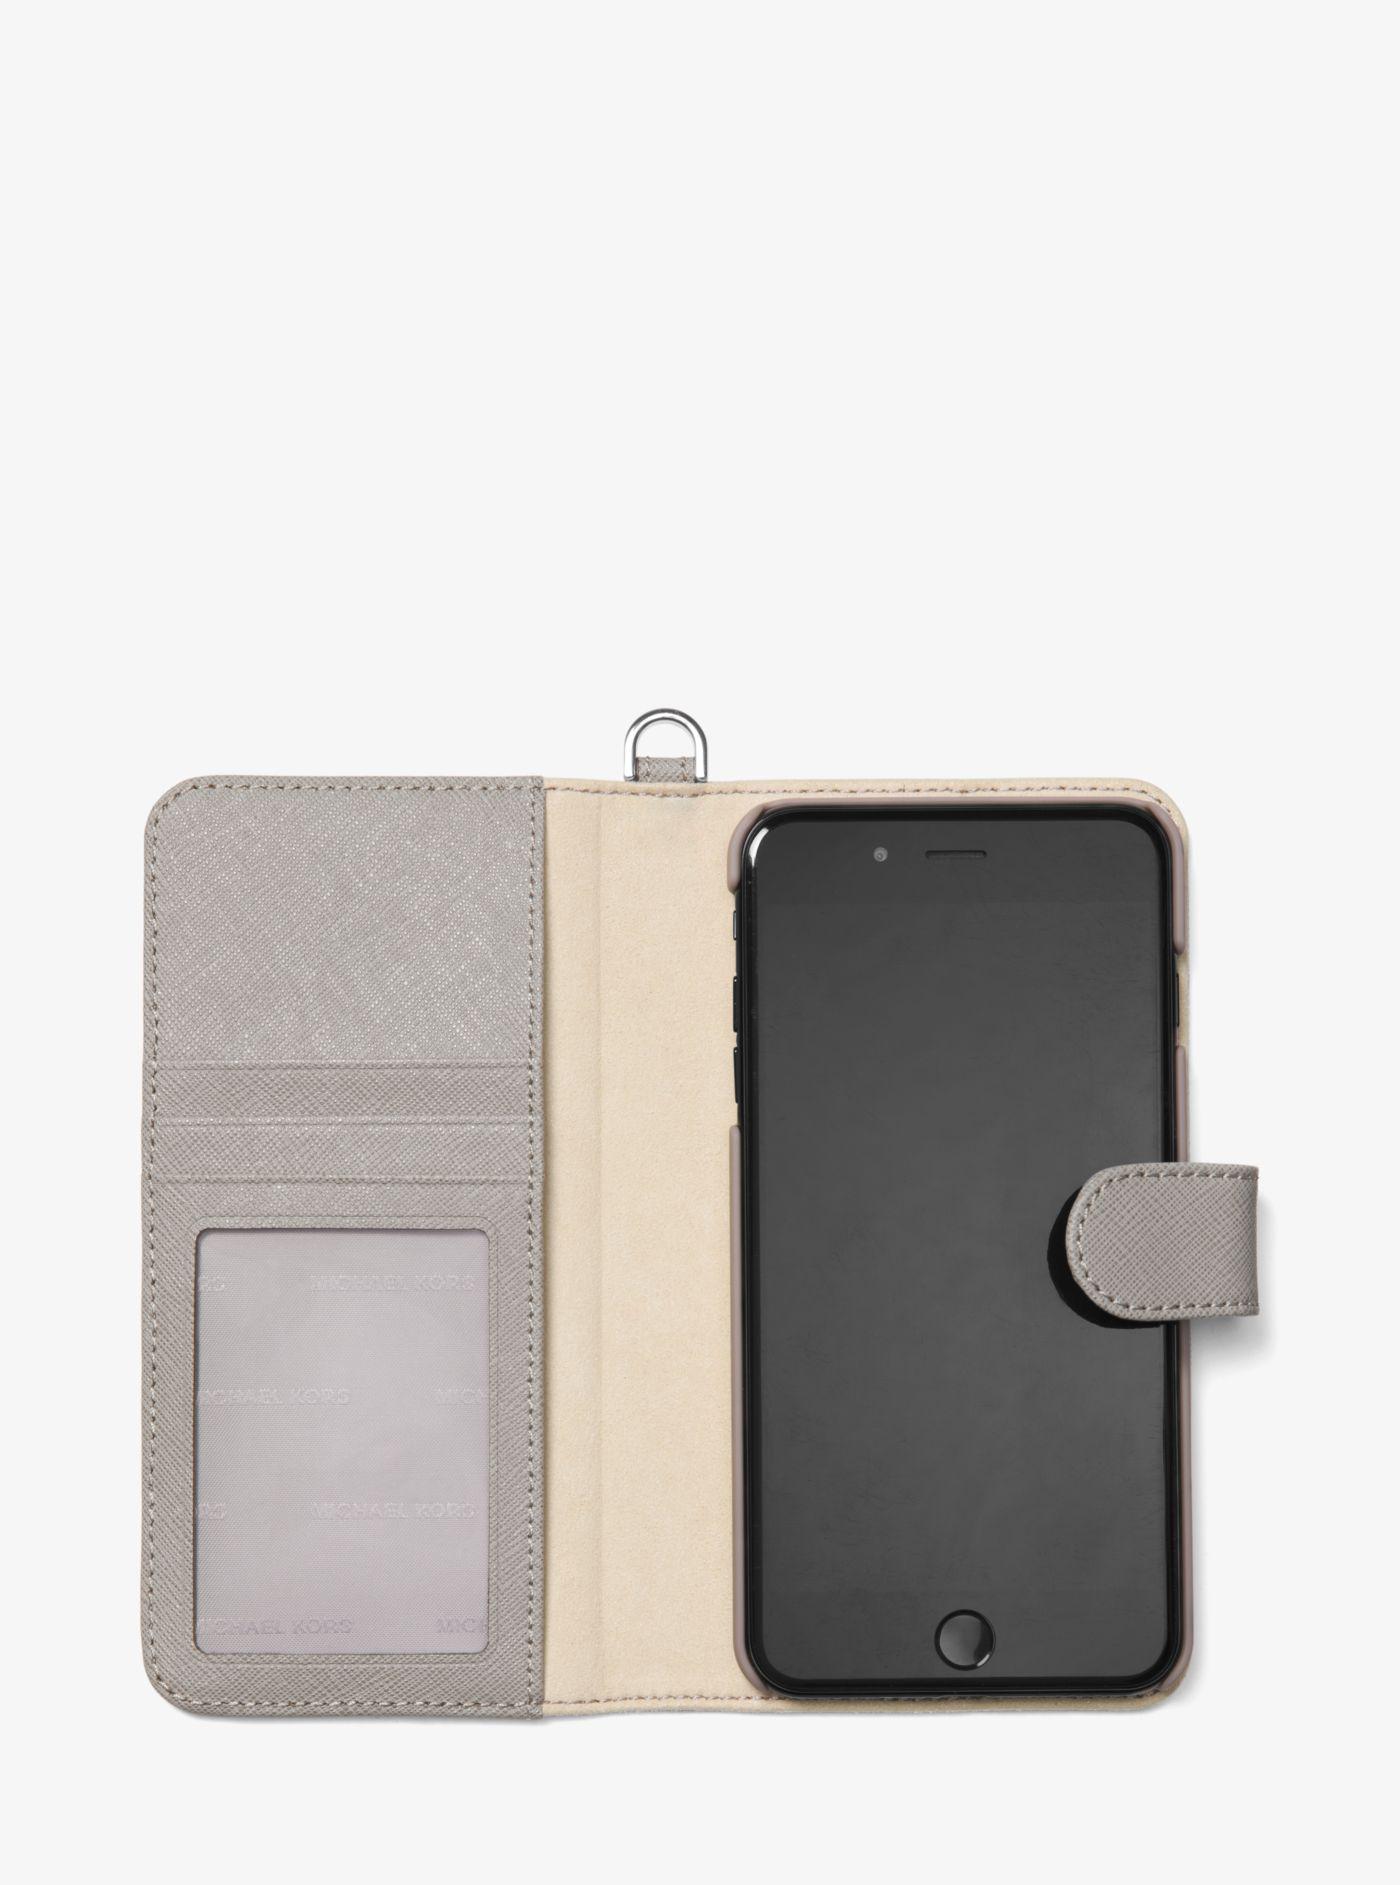 michael kors iphone 8 plus wallet case